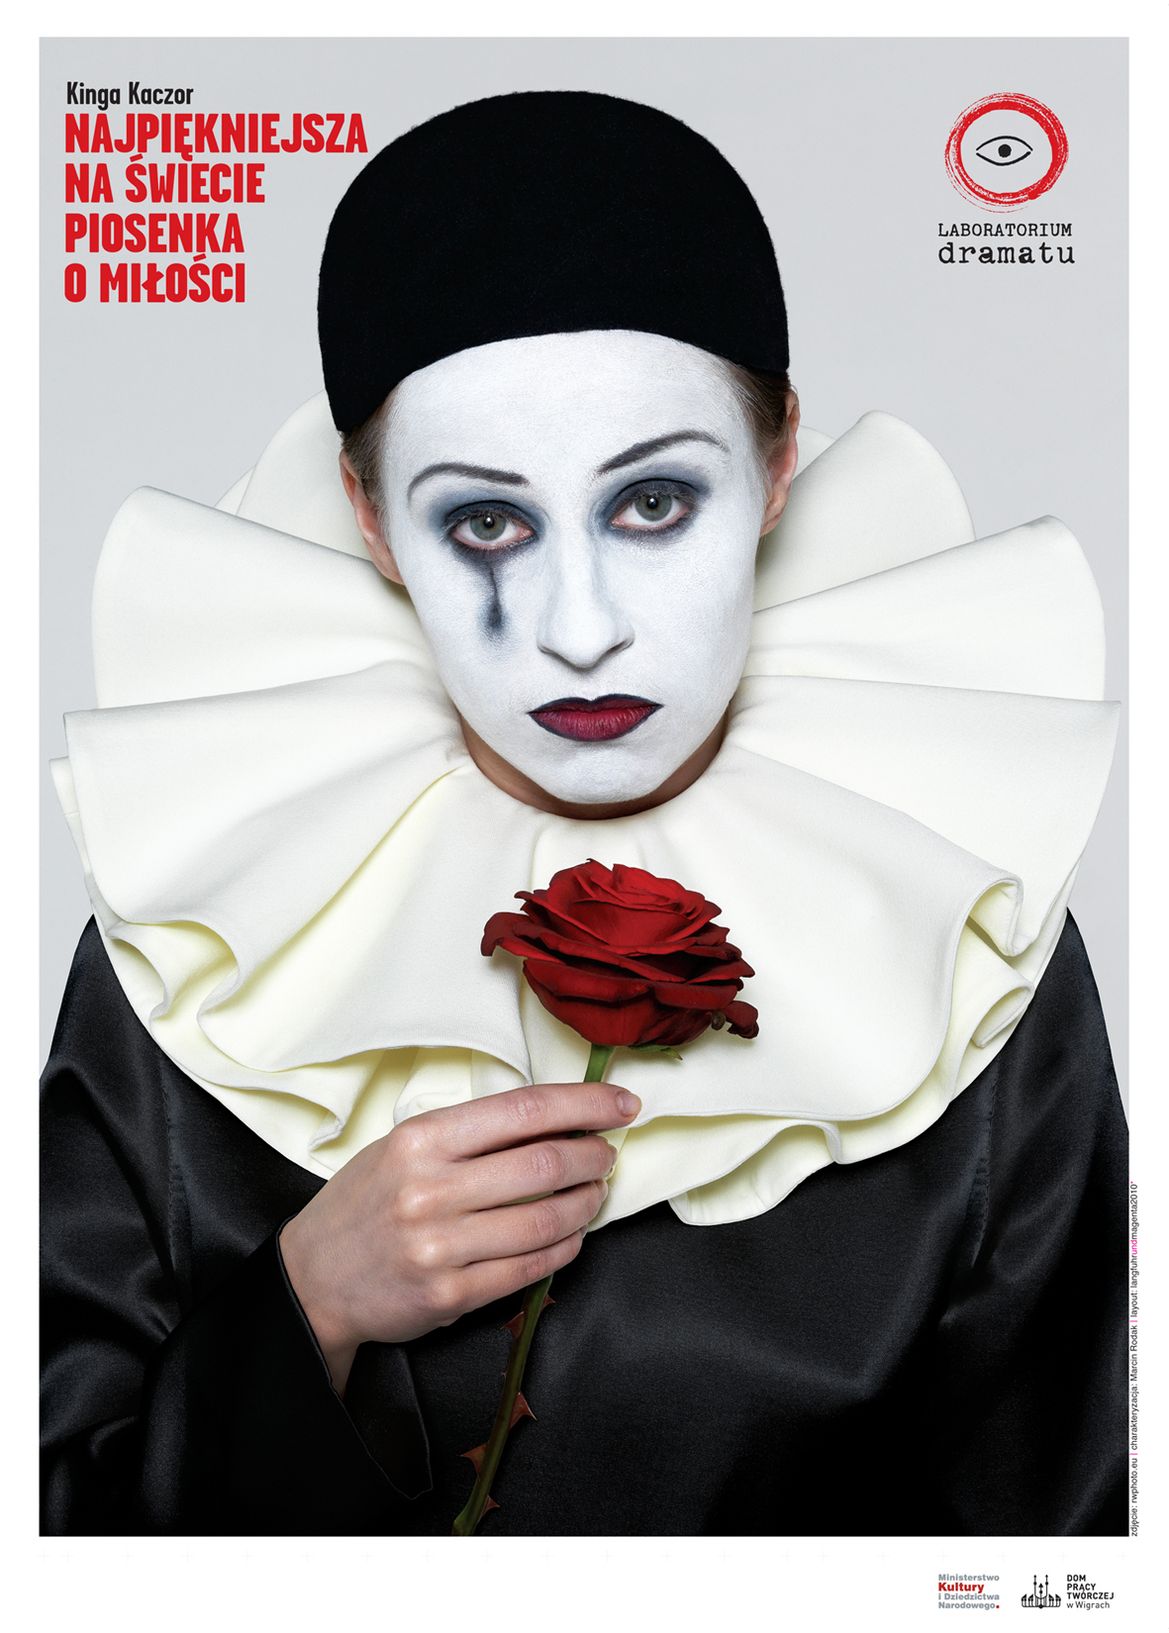 plakat Najpiękniejszej na świecie piosenki o miłości, fot. Piotr Wacowski/ Daniel Rudzki - Wrzeszcz&Magenta